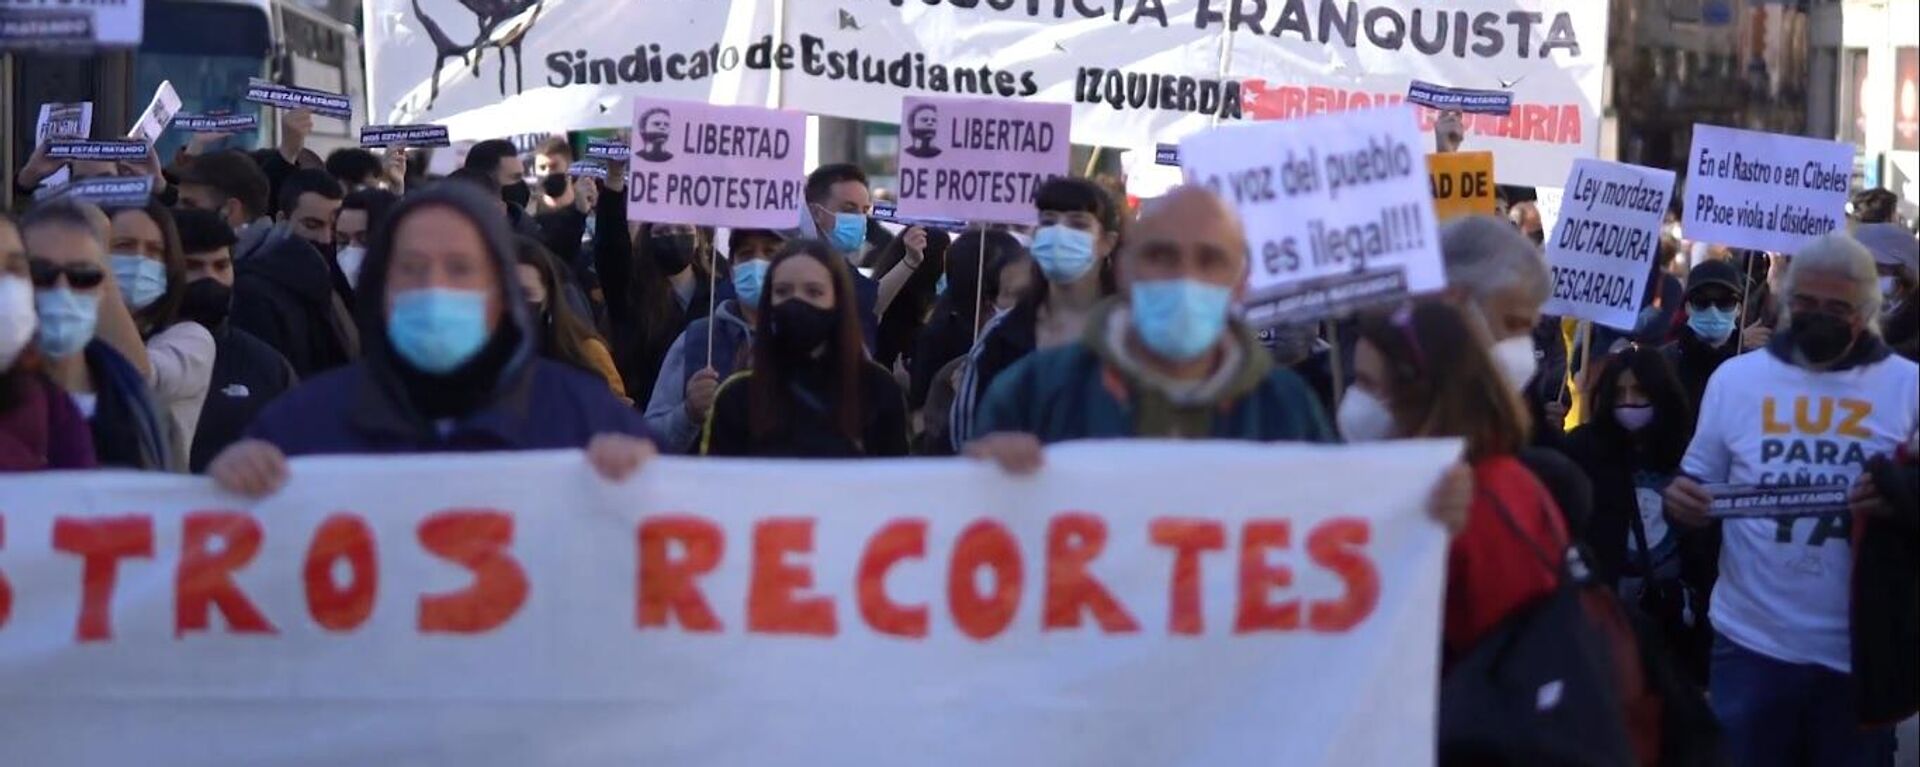 Manifestación en Madrid contra la privatización de la Sanidad y otros recortes sociales - Sputnik Mundo, 1920, 15.02.2021